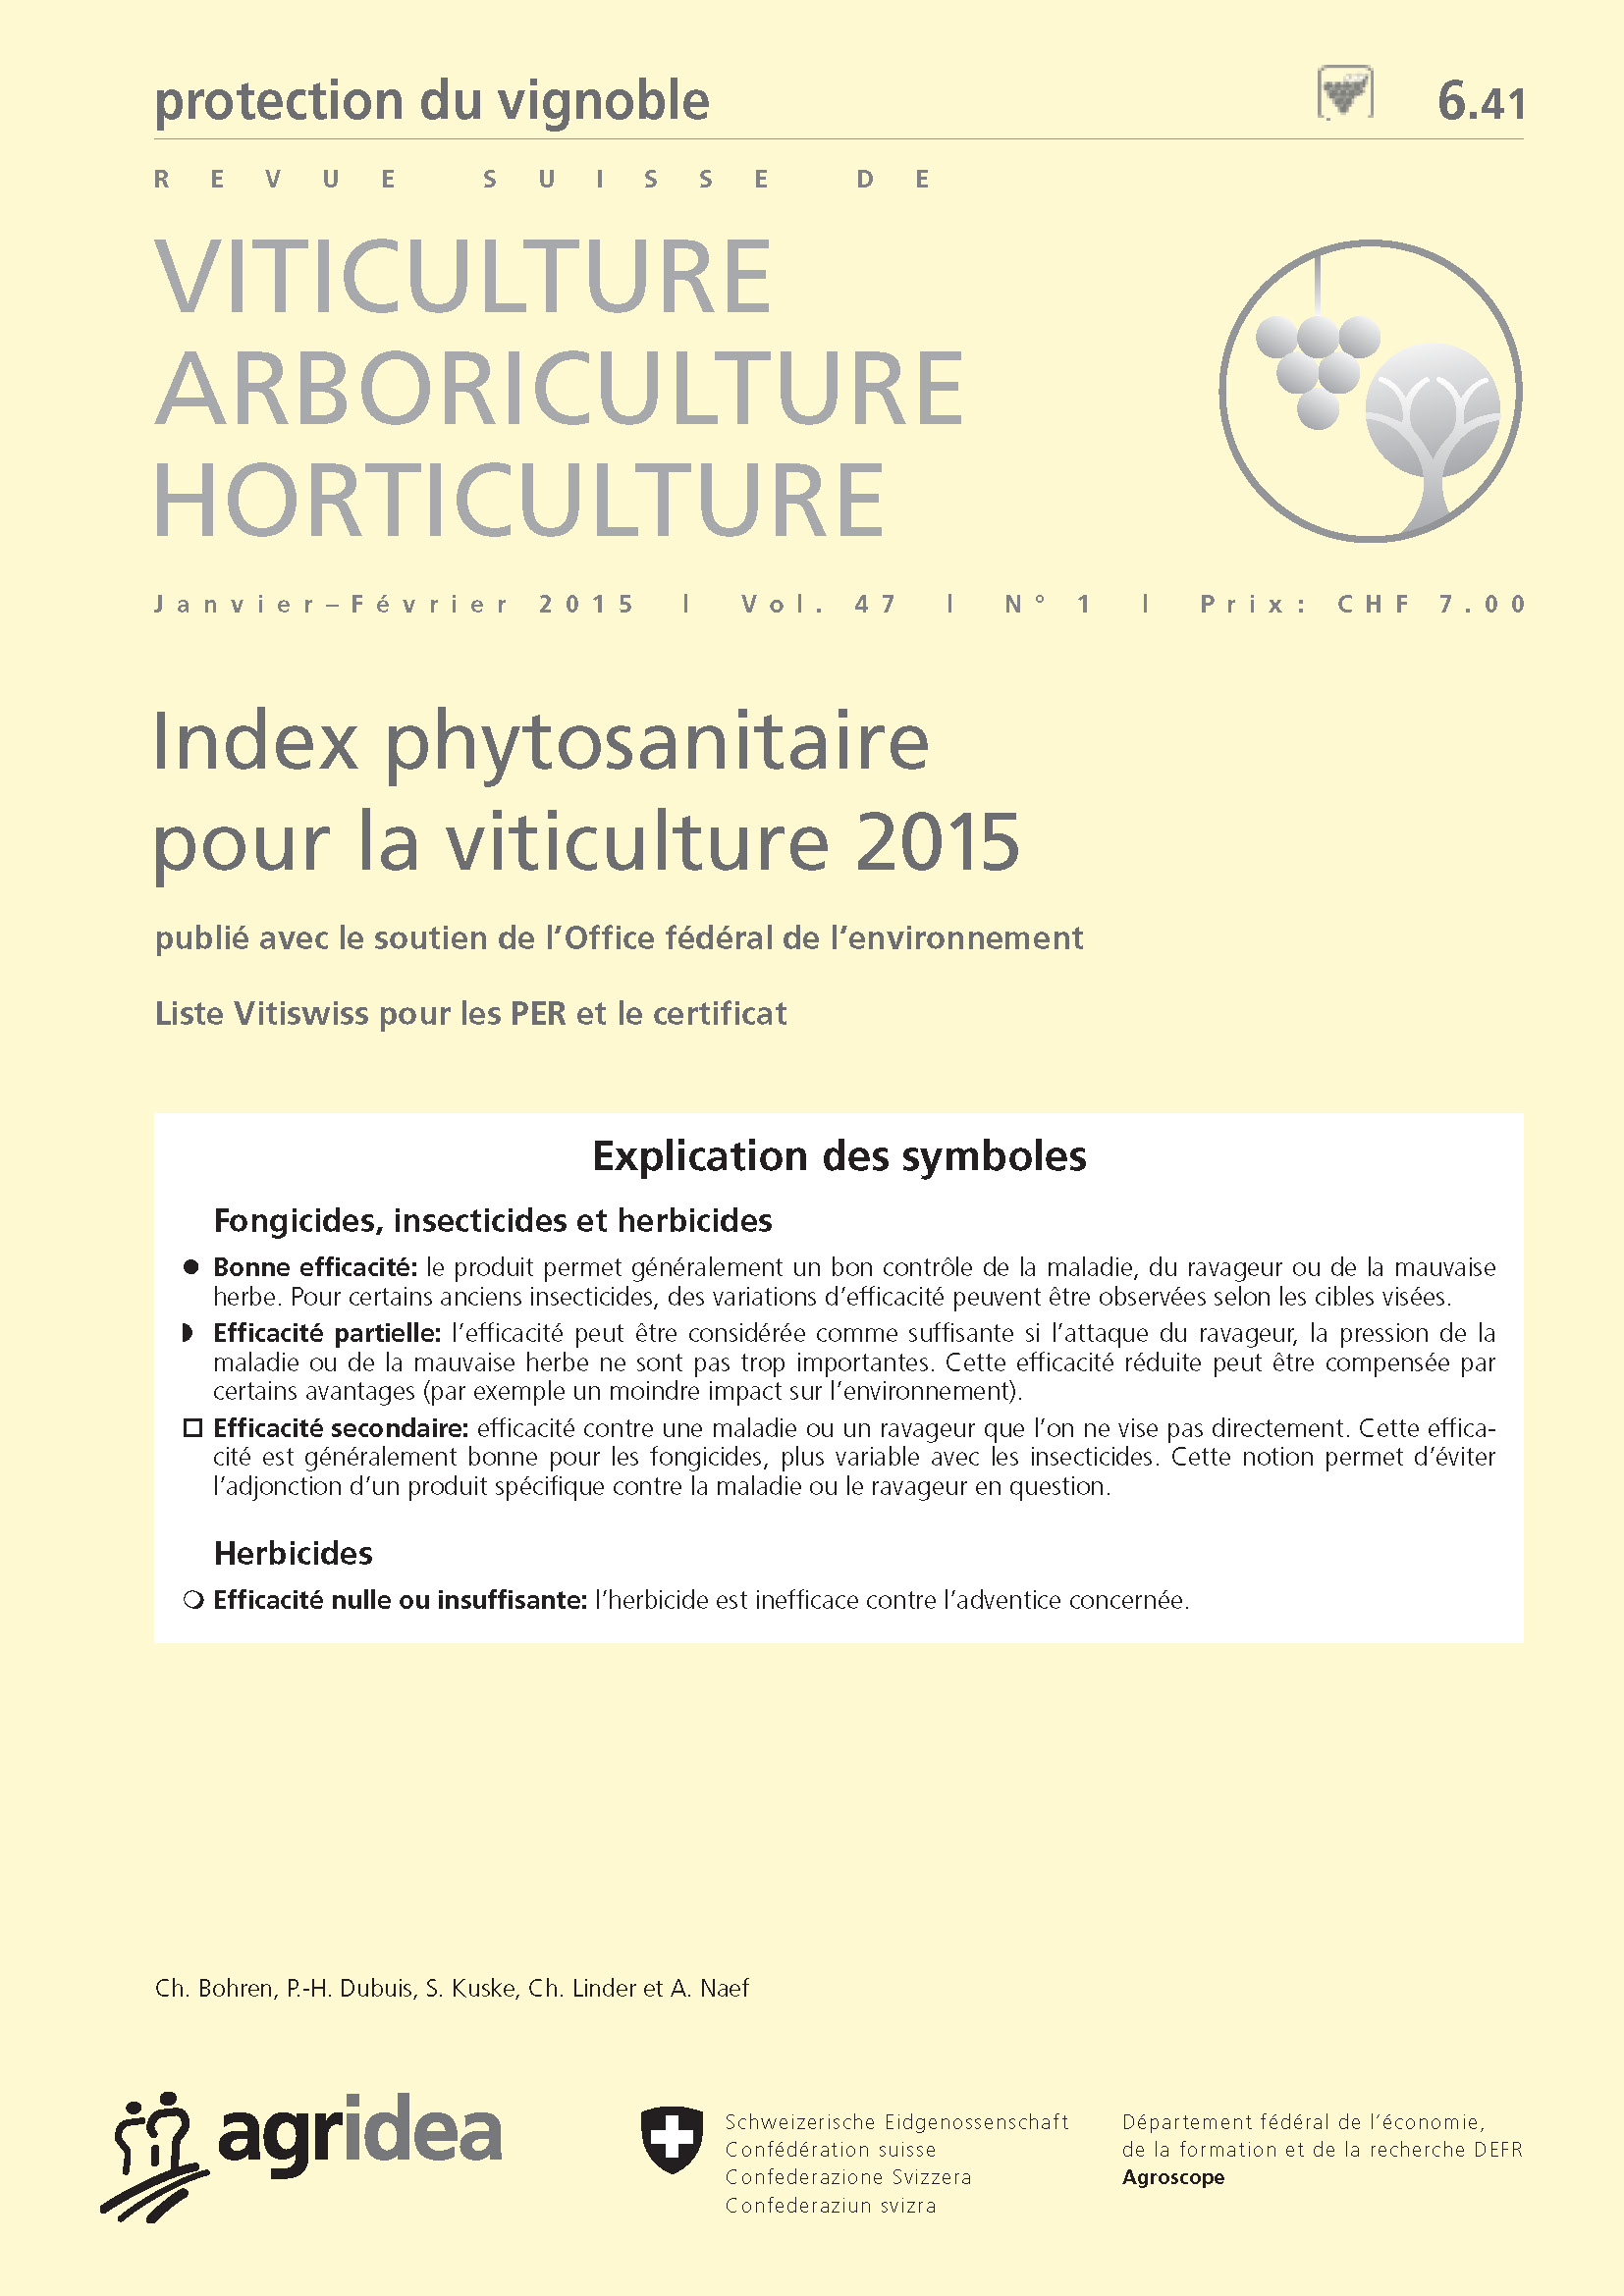 Index phytosanitaire pour la viticulture 2015